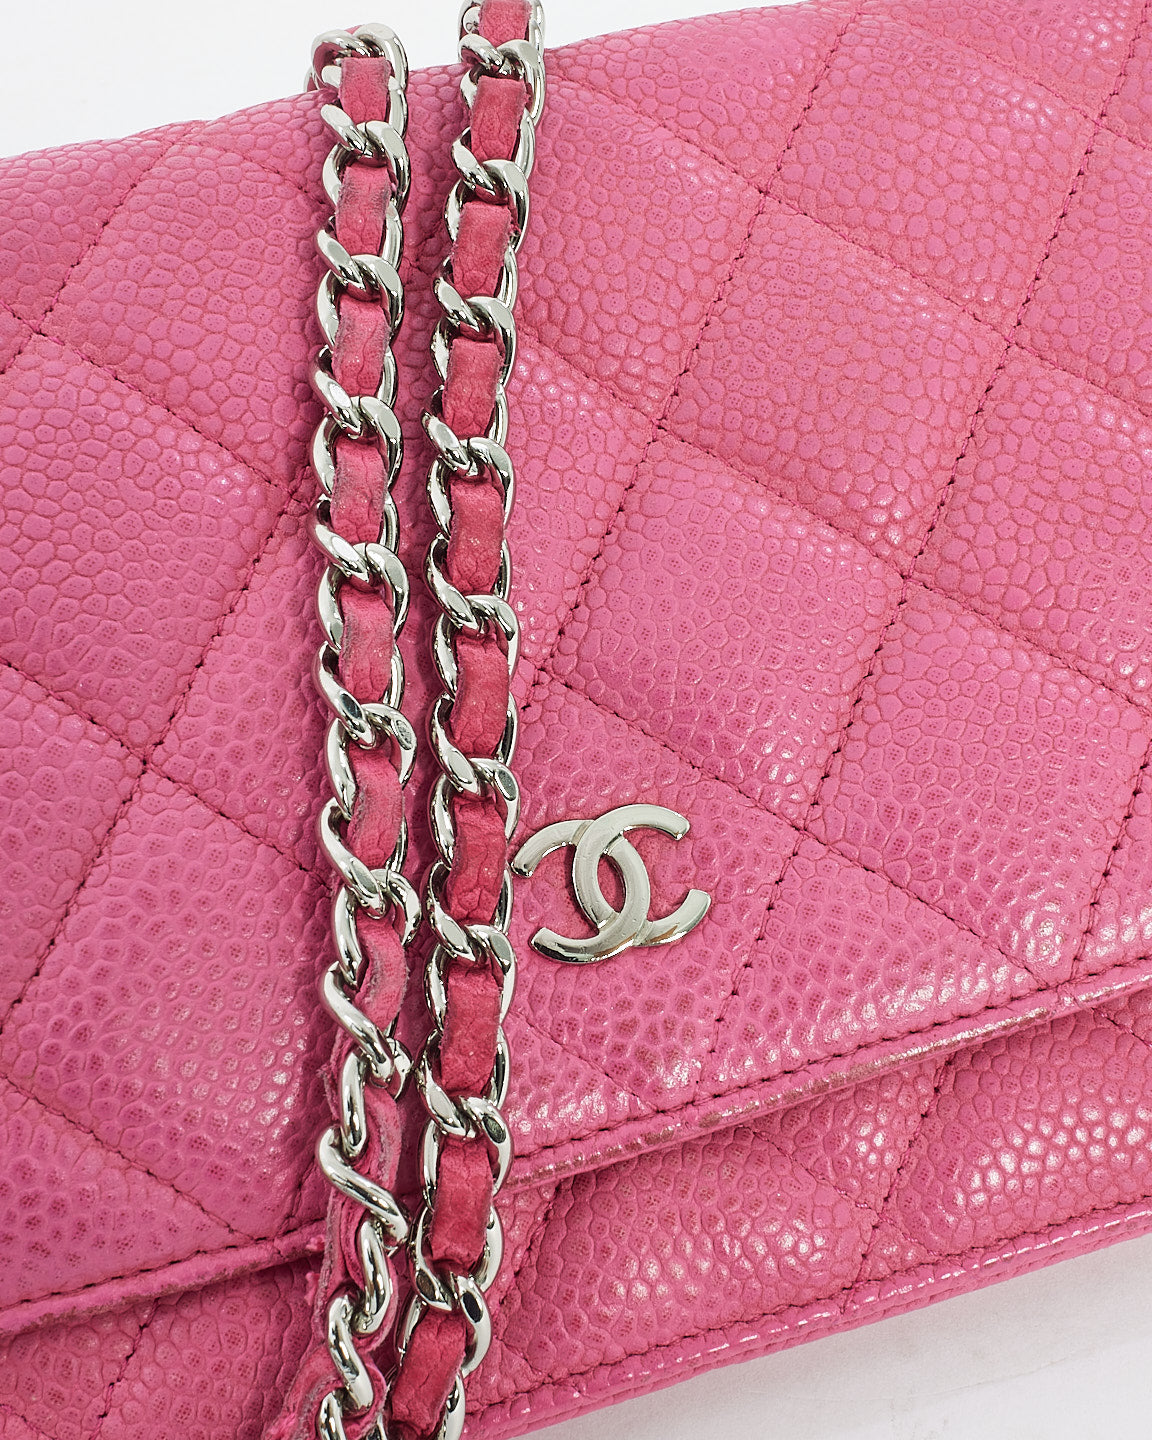 Portefeuille CC en cuir caviar matelassé rose Chanel sur sac à chaîne